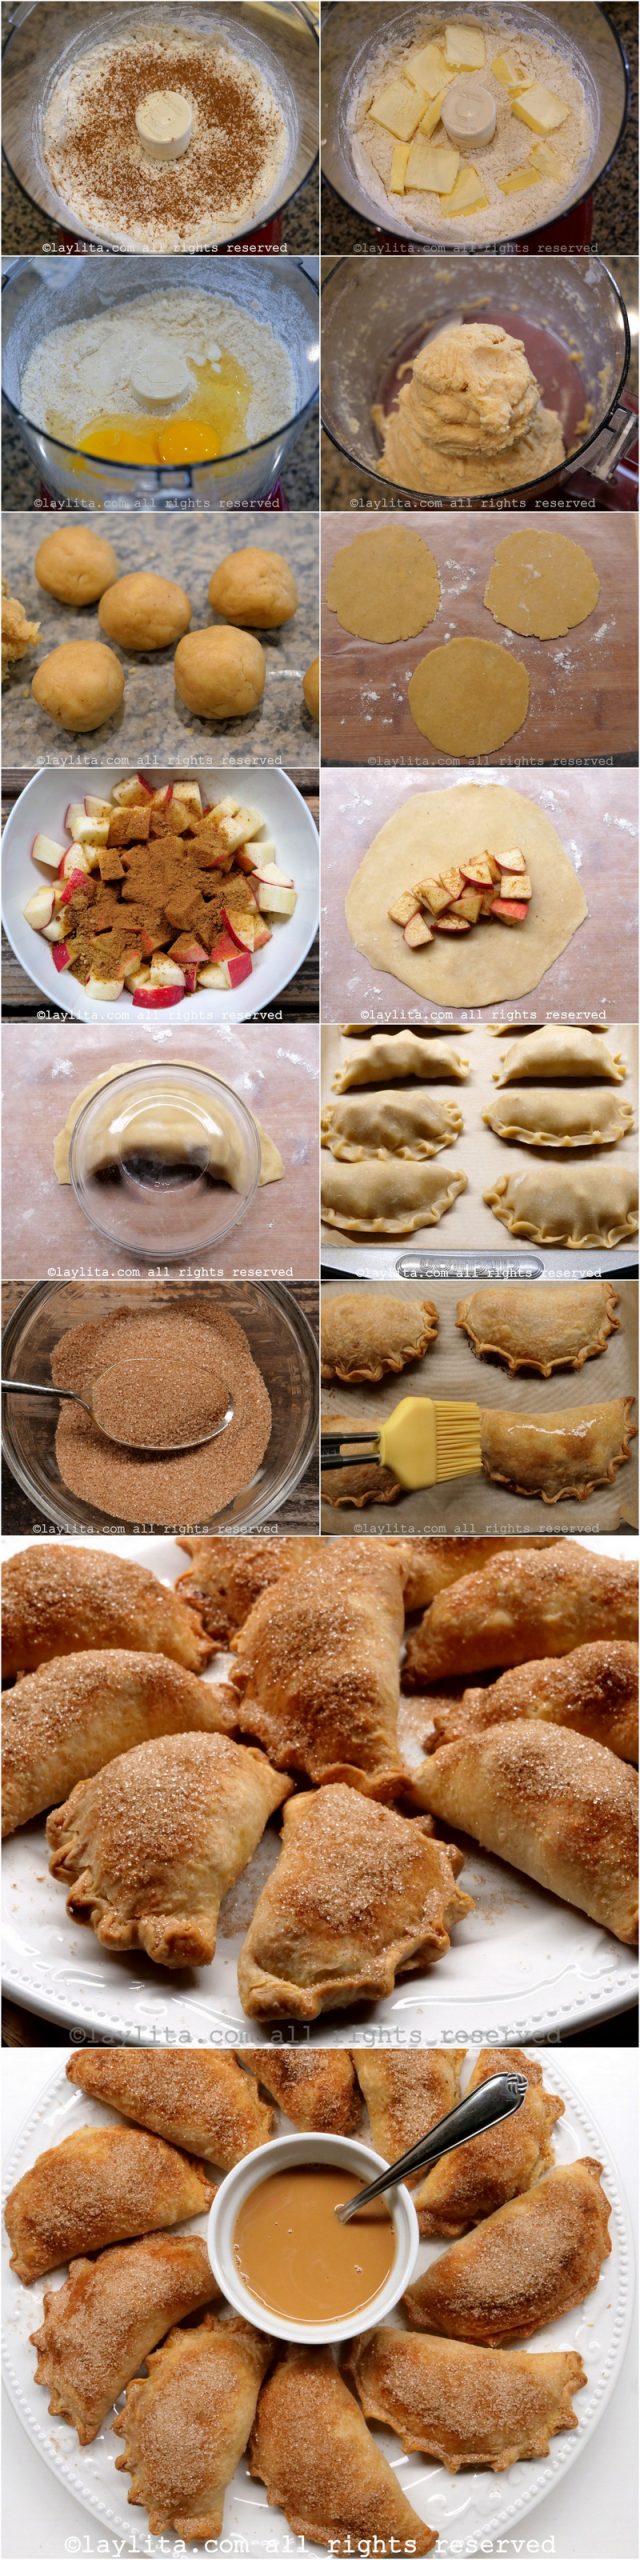 Fotos do passo a passo da preparação das empanadas caseiras de maçã com massa de canela